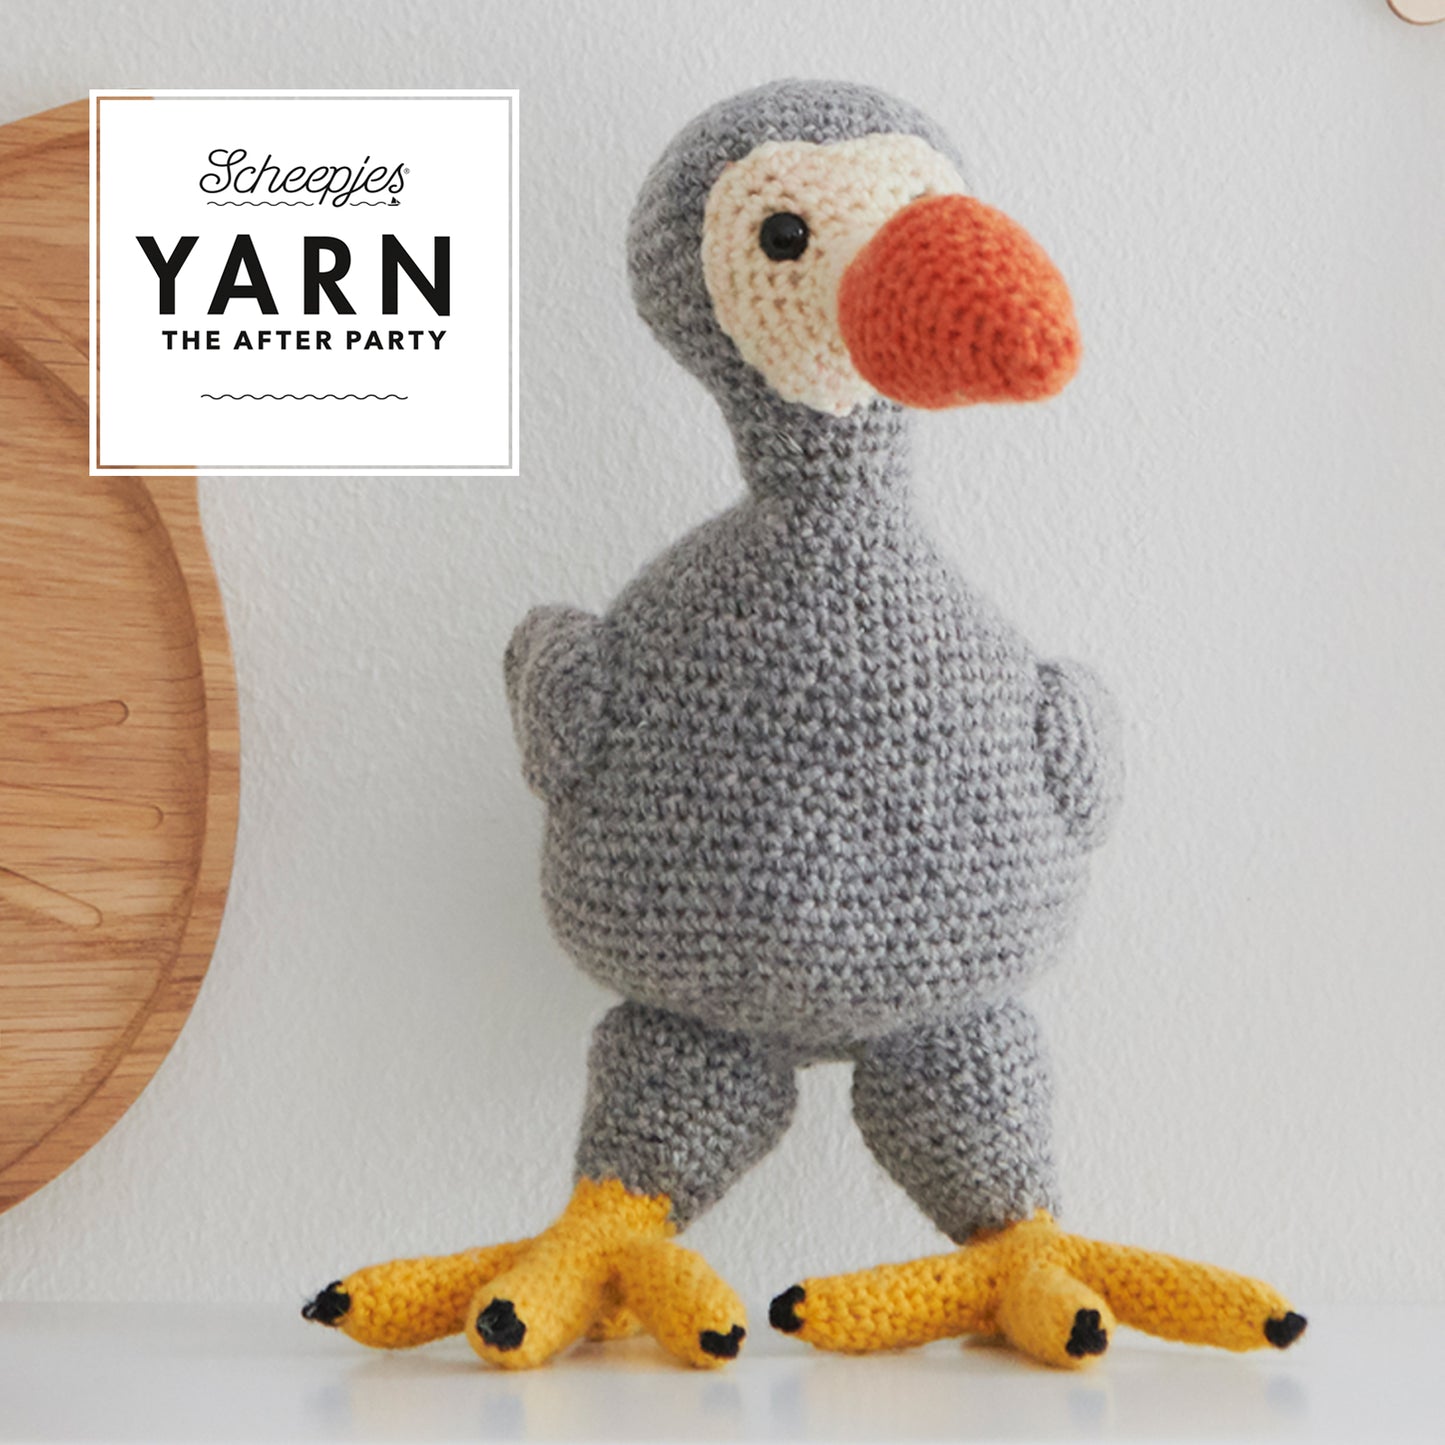 Finn the Dodo Crochet Pattern